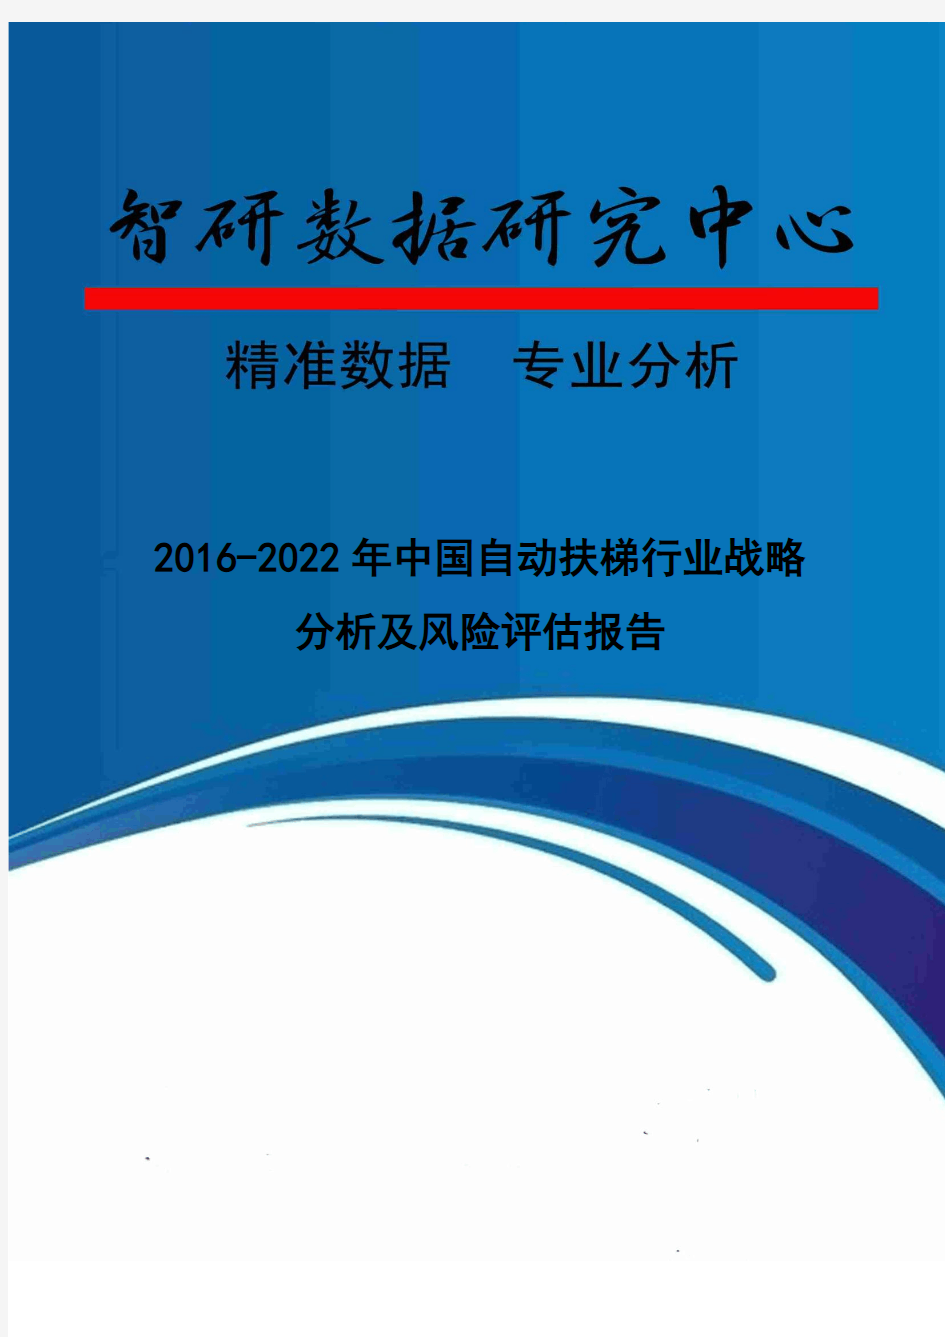 2016-2022年中国自动扶梯行业战略分析及风险评估报告